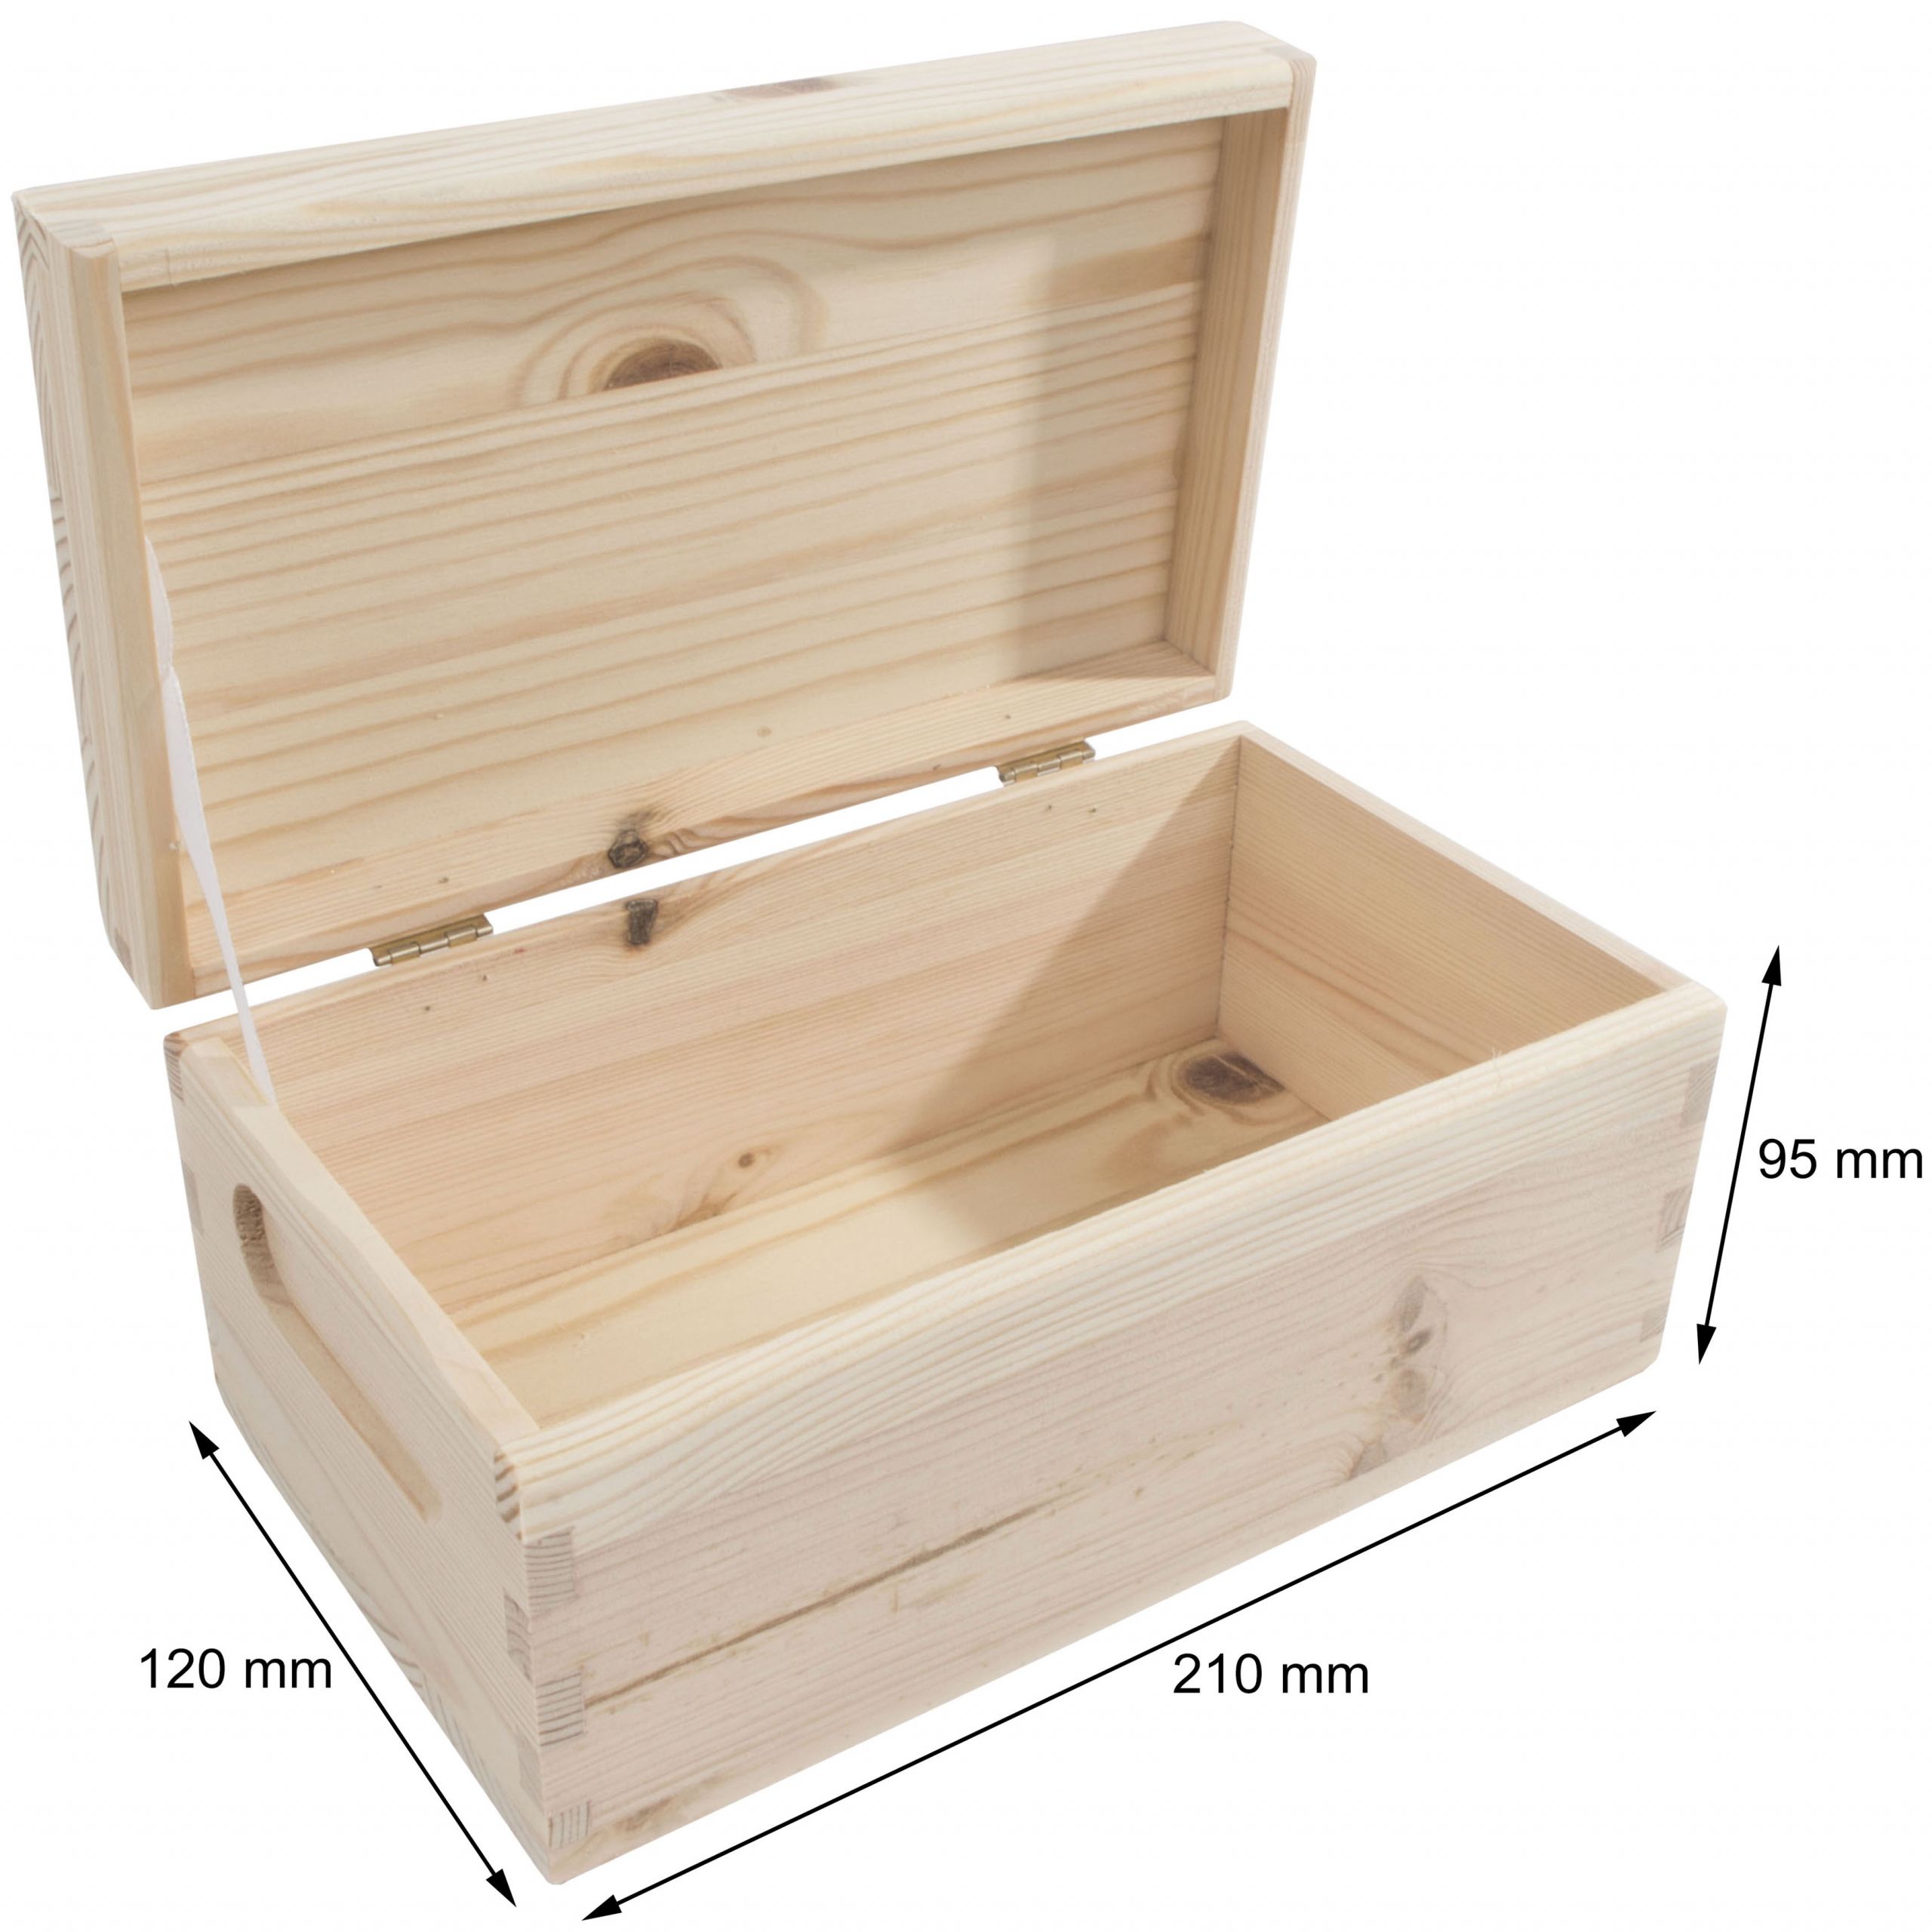 DIY Wooden Storage Boxes
 Wooden Storage Box 21x12x9cm Unpainted Pine Keepsake